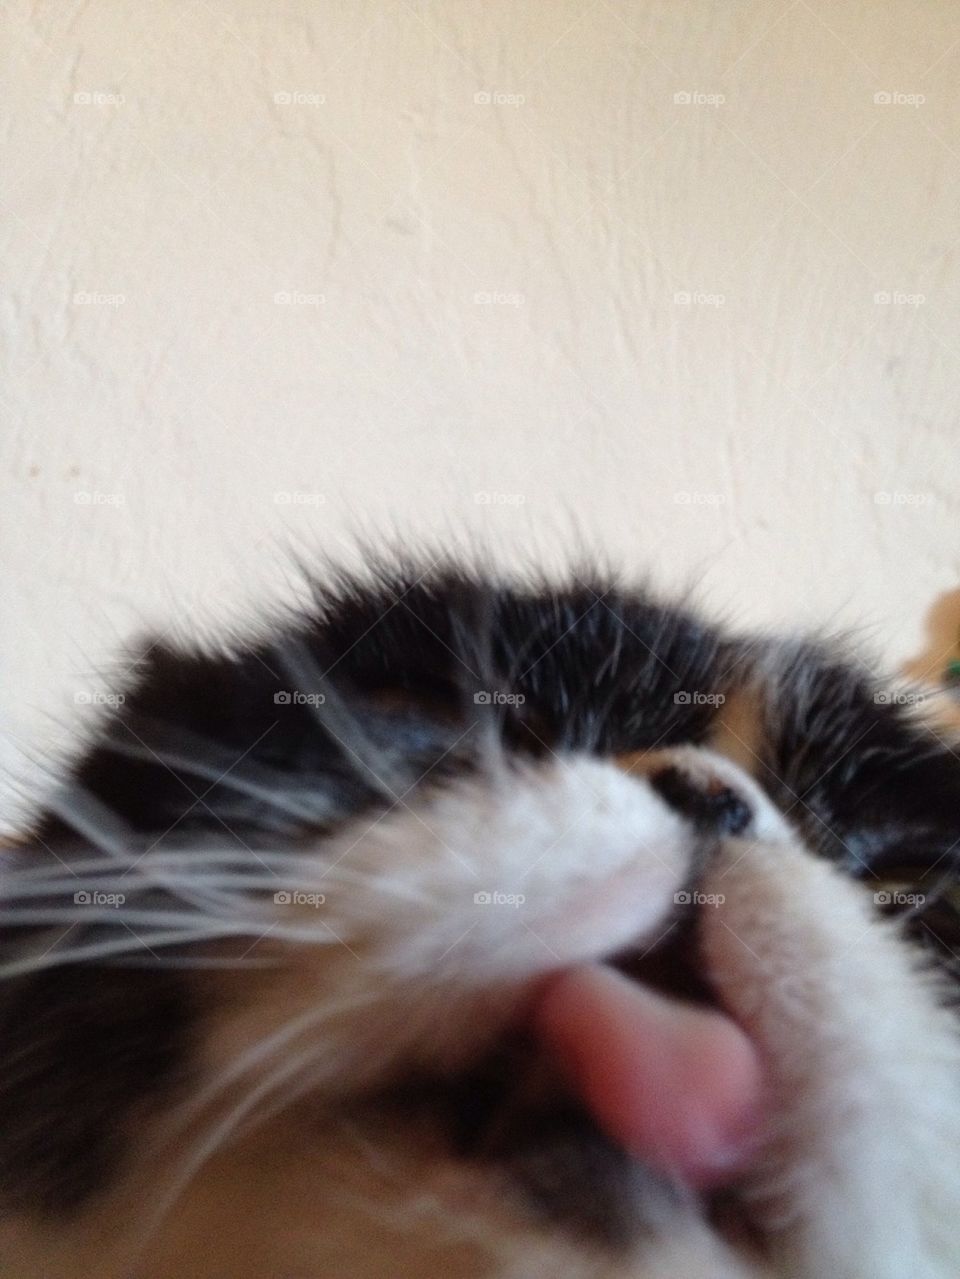 Cat kiss